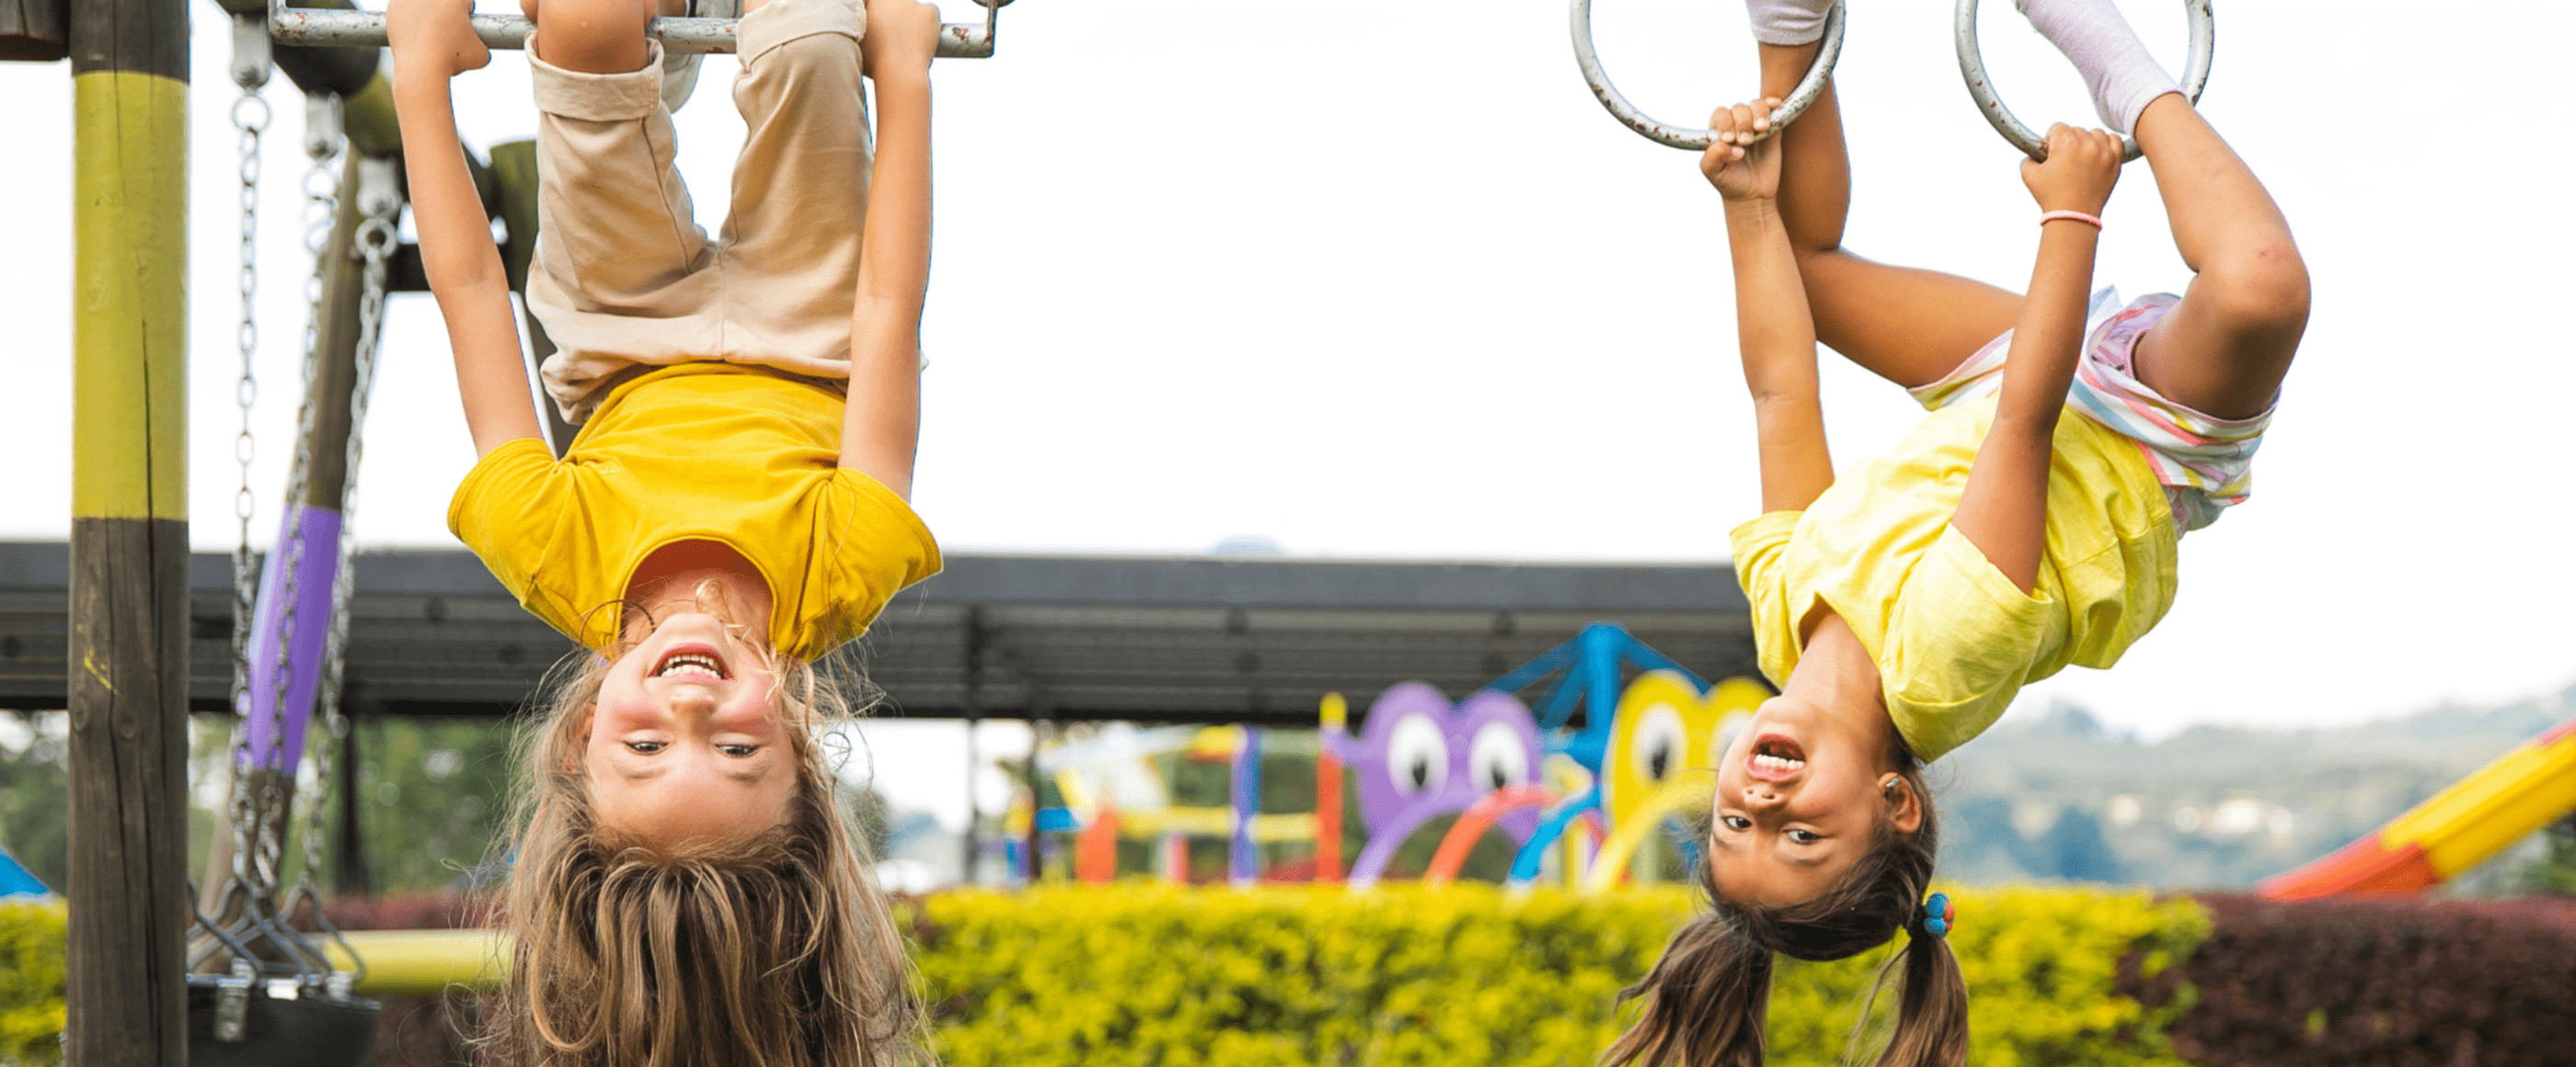 Zwei Mädchen mit gelben Shirts hängen kopfüber an Ringen und lachen breit.